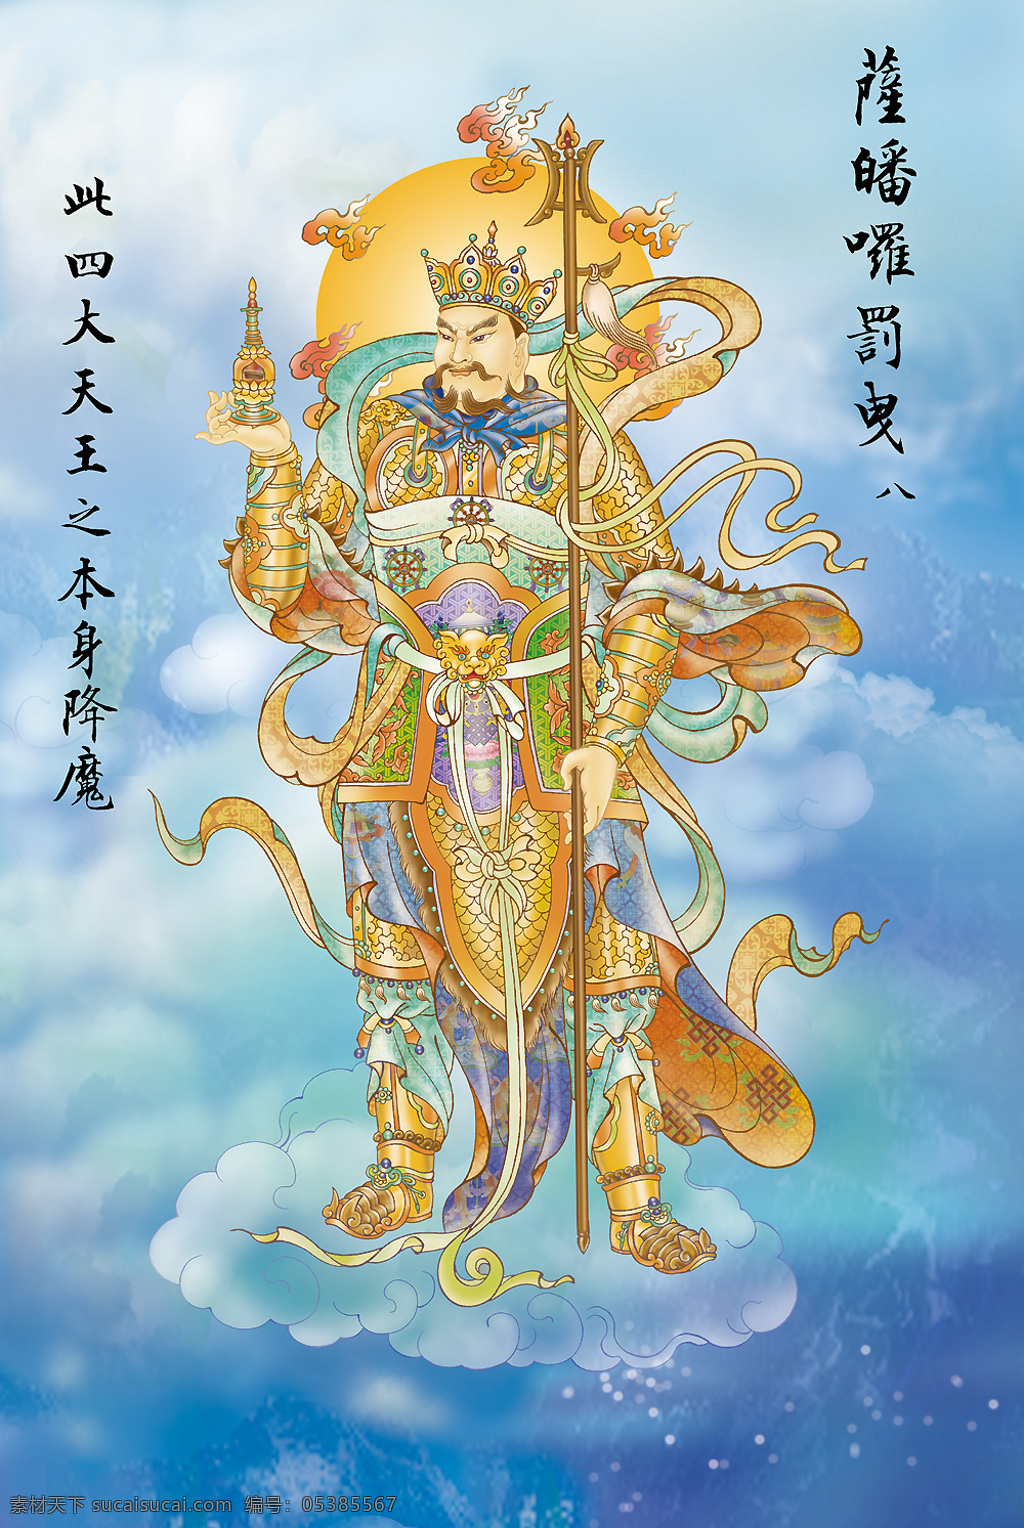 大悲出相图8 佛教 依林法师画 林隆达居士书 台湾 文化艺术 宗教信仰 设计图库